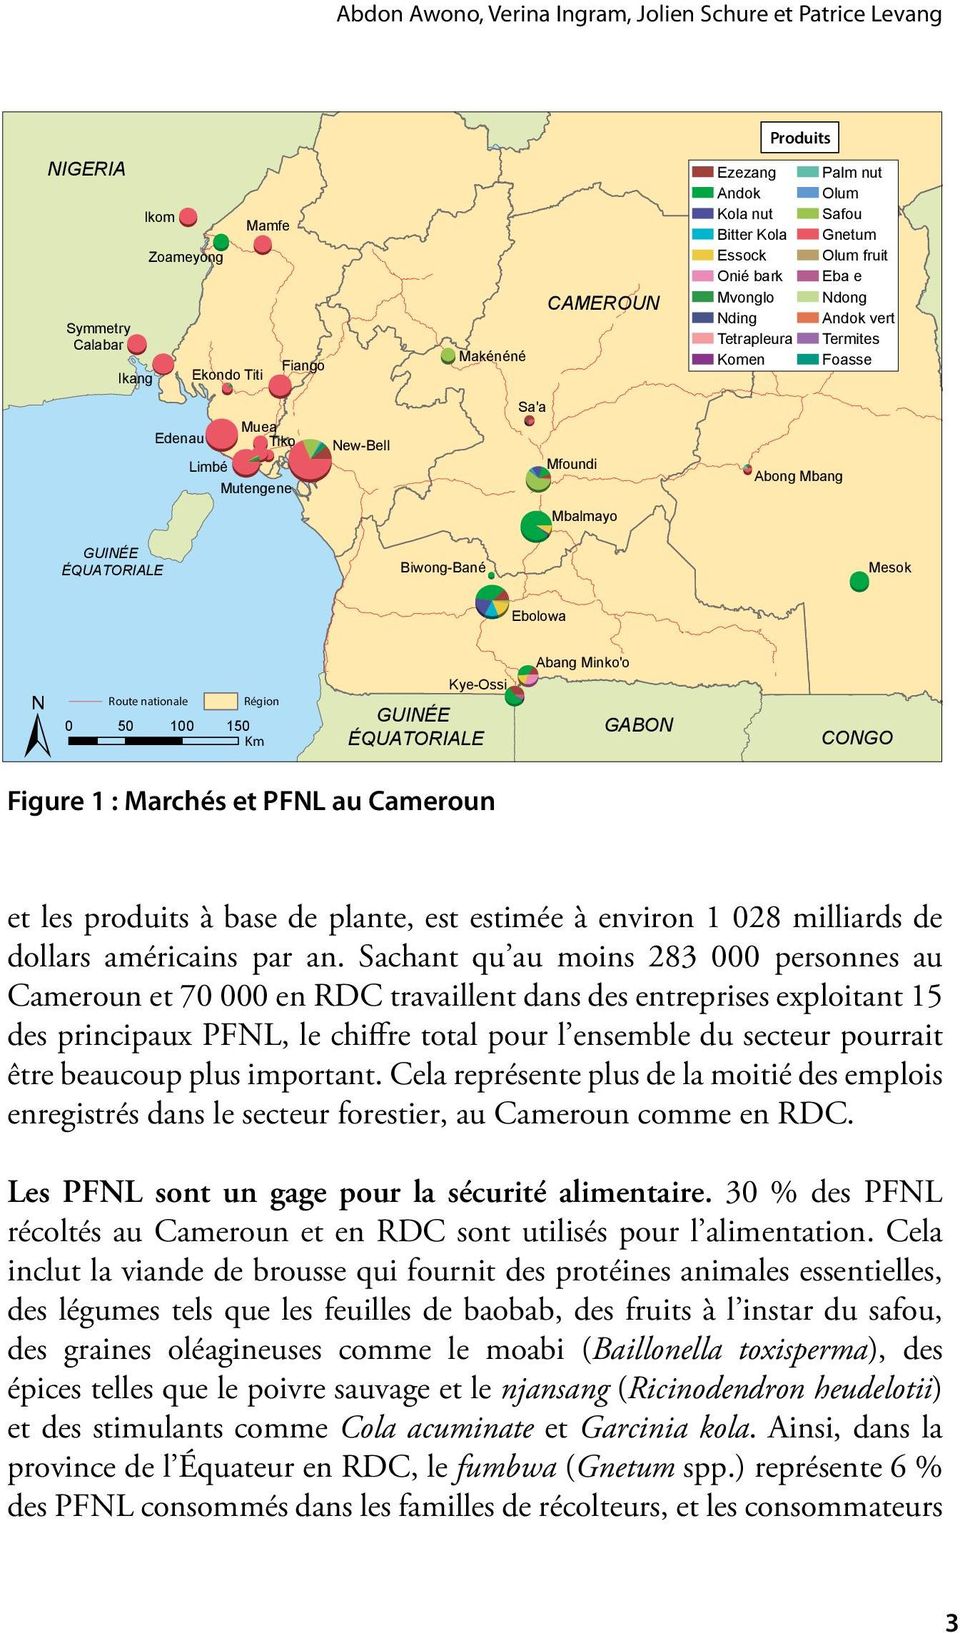 e Ndong Andok vert Termites Foasse Mesok Ebolowa ± Route nationale Région 0 50 100 150 Km Kye-Ossi GUINÉE ÉQUATORIALE Figure 1 : Marchés et PFNL au Cameroun Abang Minko'o GABON CONGO et les produits